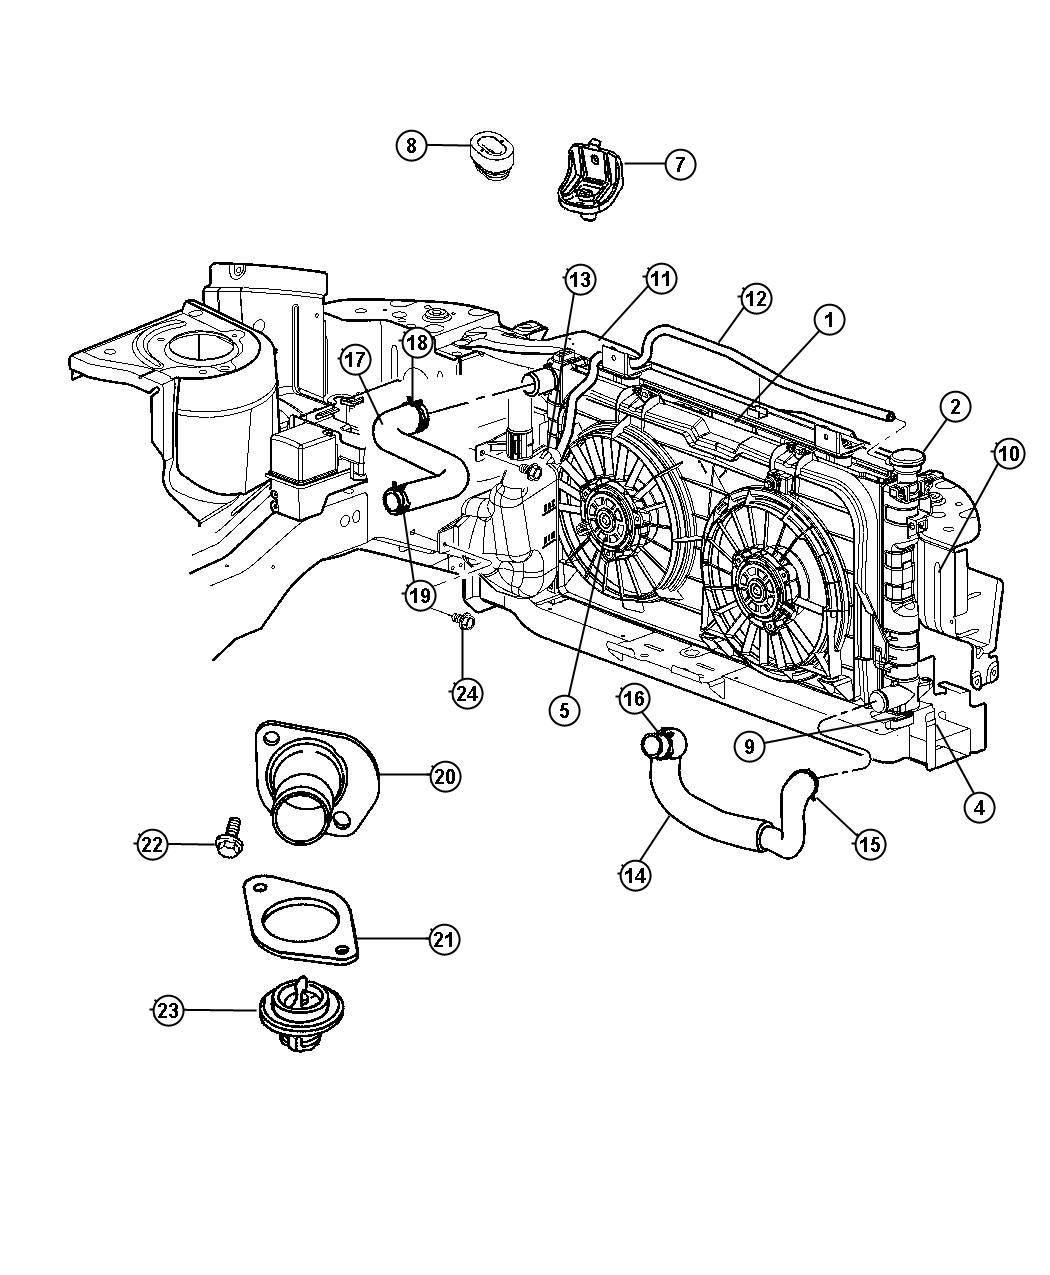 Radiator and Related Parts [[3.3L V6 OHV Engine,3.8L V6 OHV Engine,3.3L V6 OHV FFV ENGINE]]. Diagram